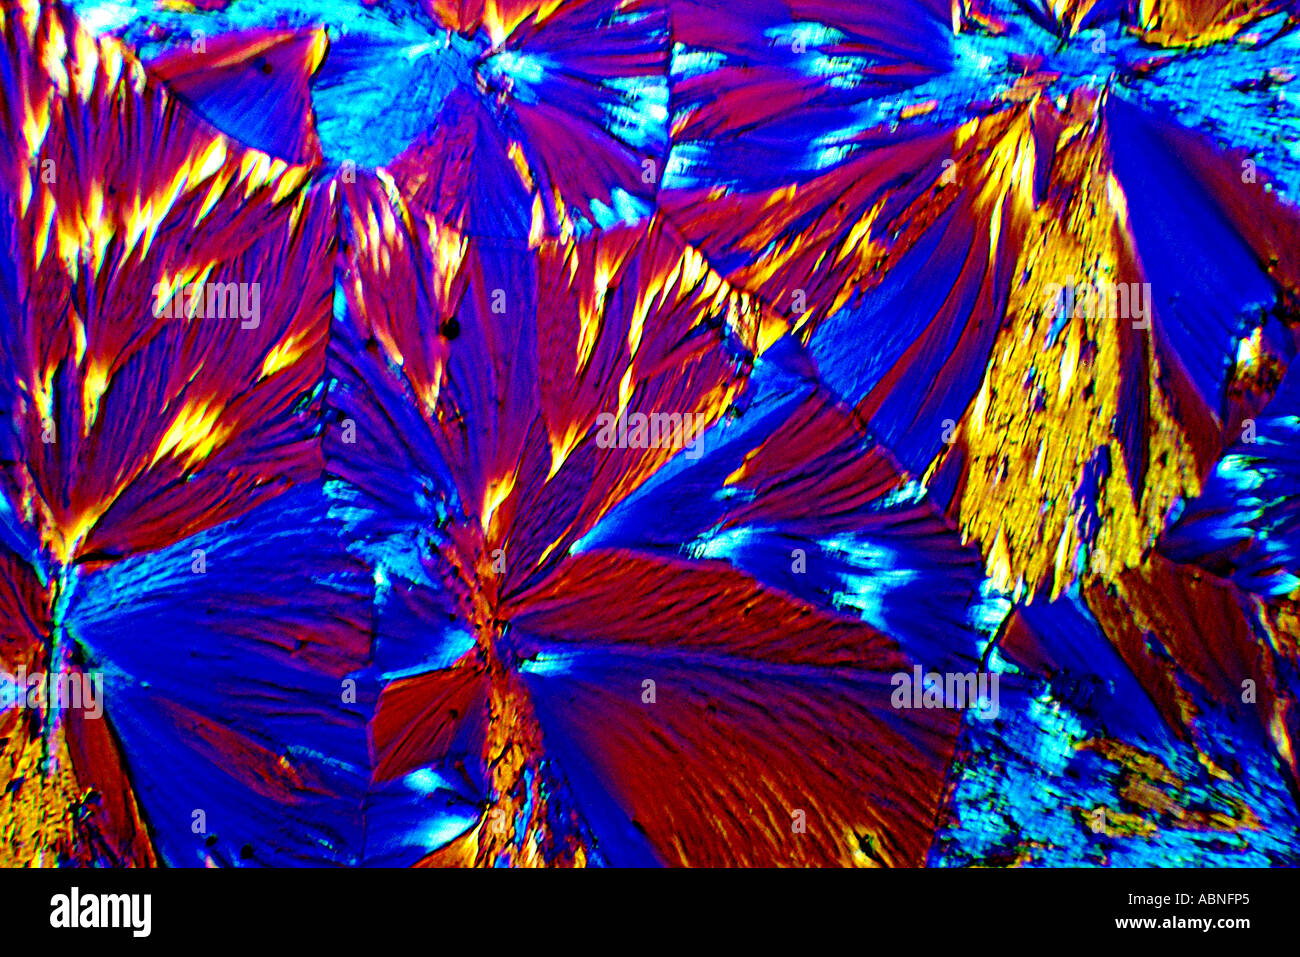 Le ferricyanure plus Pottasium Perchlorure de cristaux mixtes. Banque D'Images